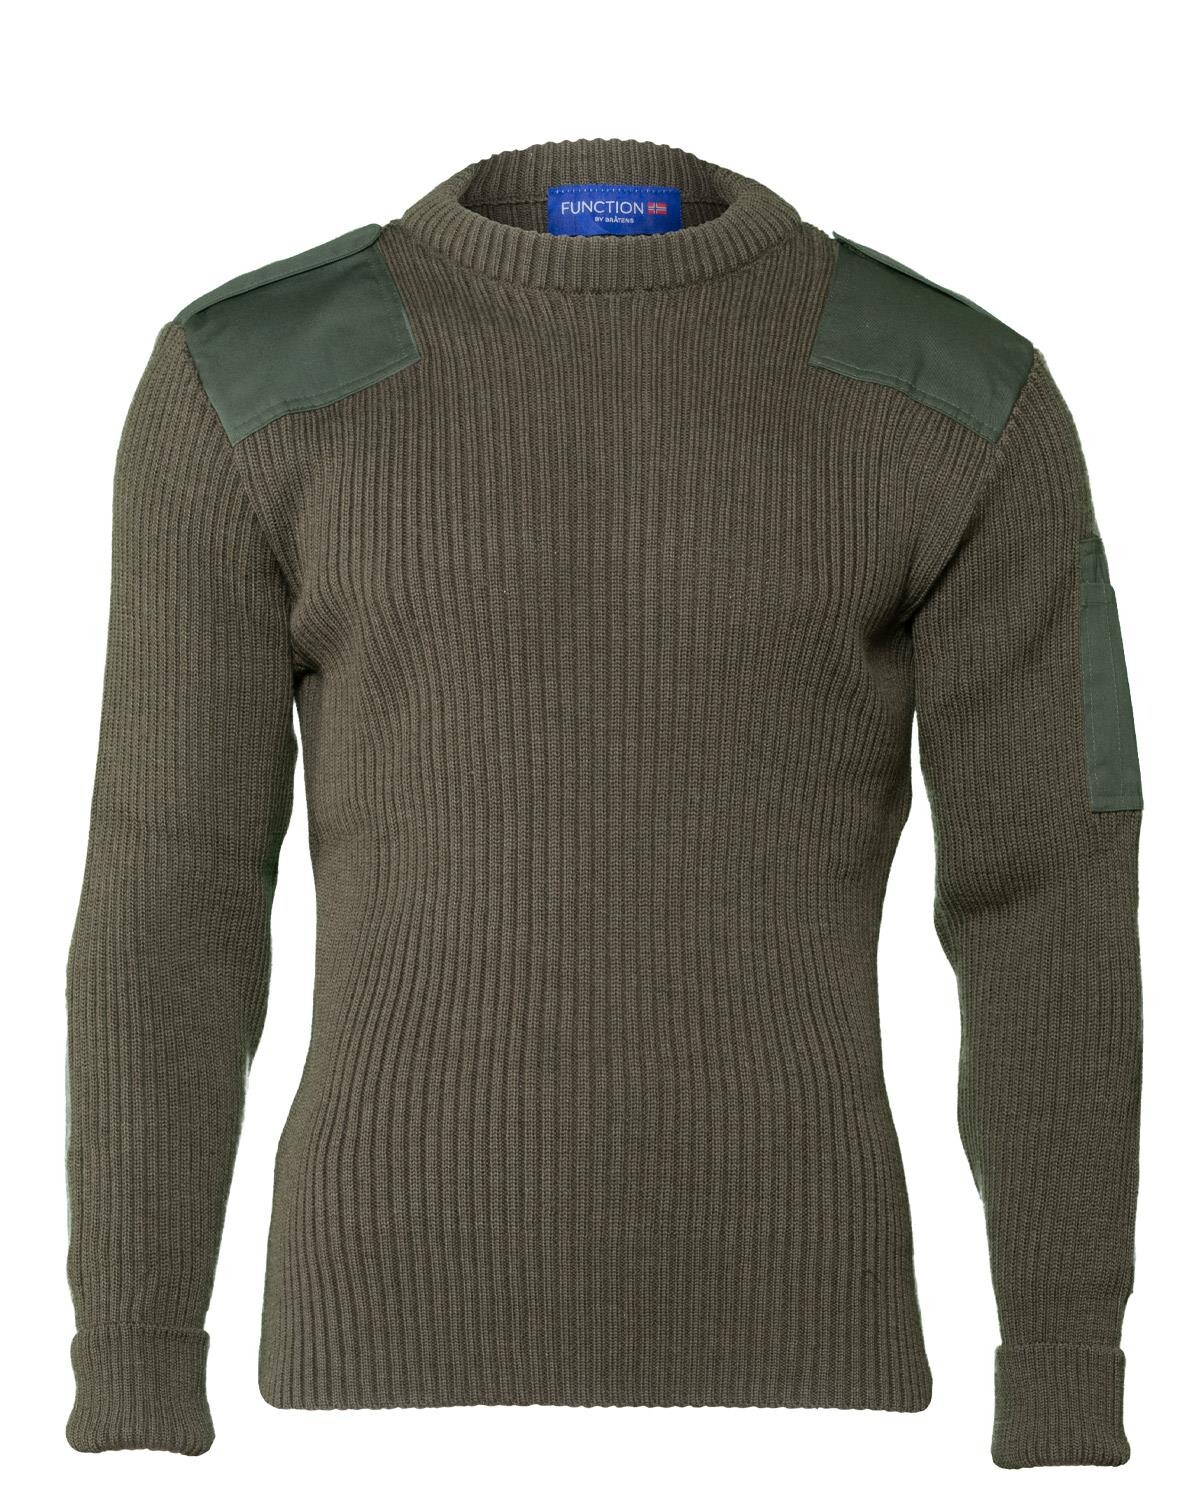 Billede af Bråtens Nato Sweater - 80% Merino uld (Grøn, 2XL)